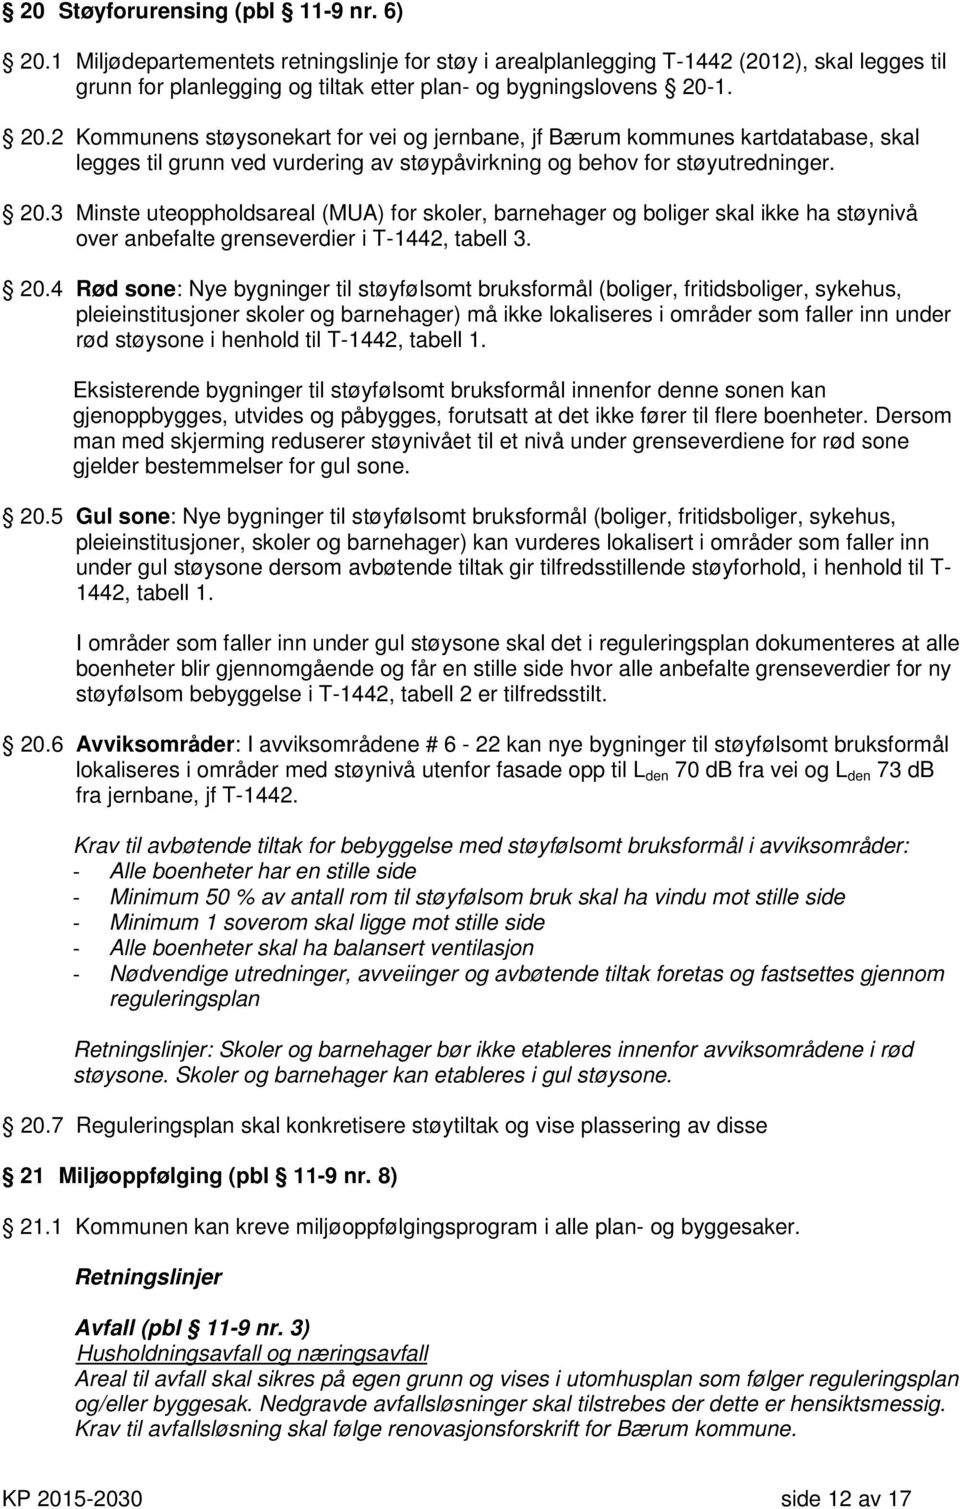 1. 20.2 Kommunens støysonekart for vei og jernbane, jf Bærum kommunes kartdatabase, skal legges til grunn ved vurdering av støypåvirkning og behov for støyutredninger. 20.3 Minste uteoppholdsareal (MUA) for skoler, barnehager og boliger skal ikke ha støynivå over anbefalte grenseverdier i T-1442, tabell 3.